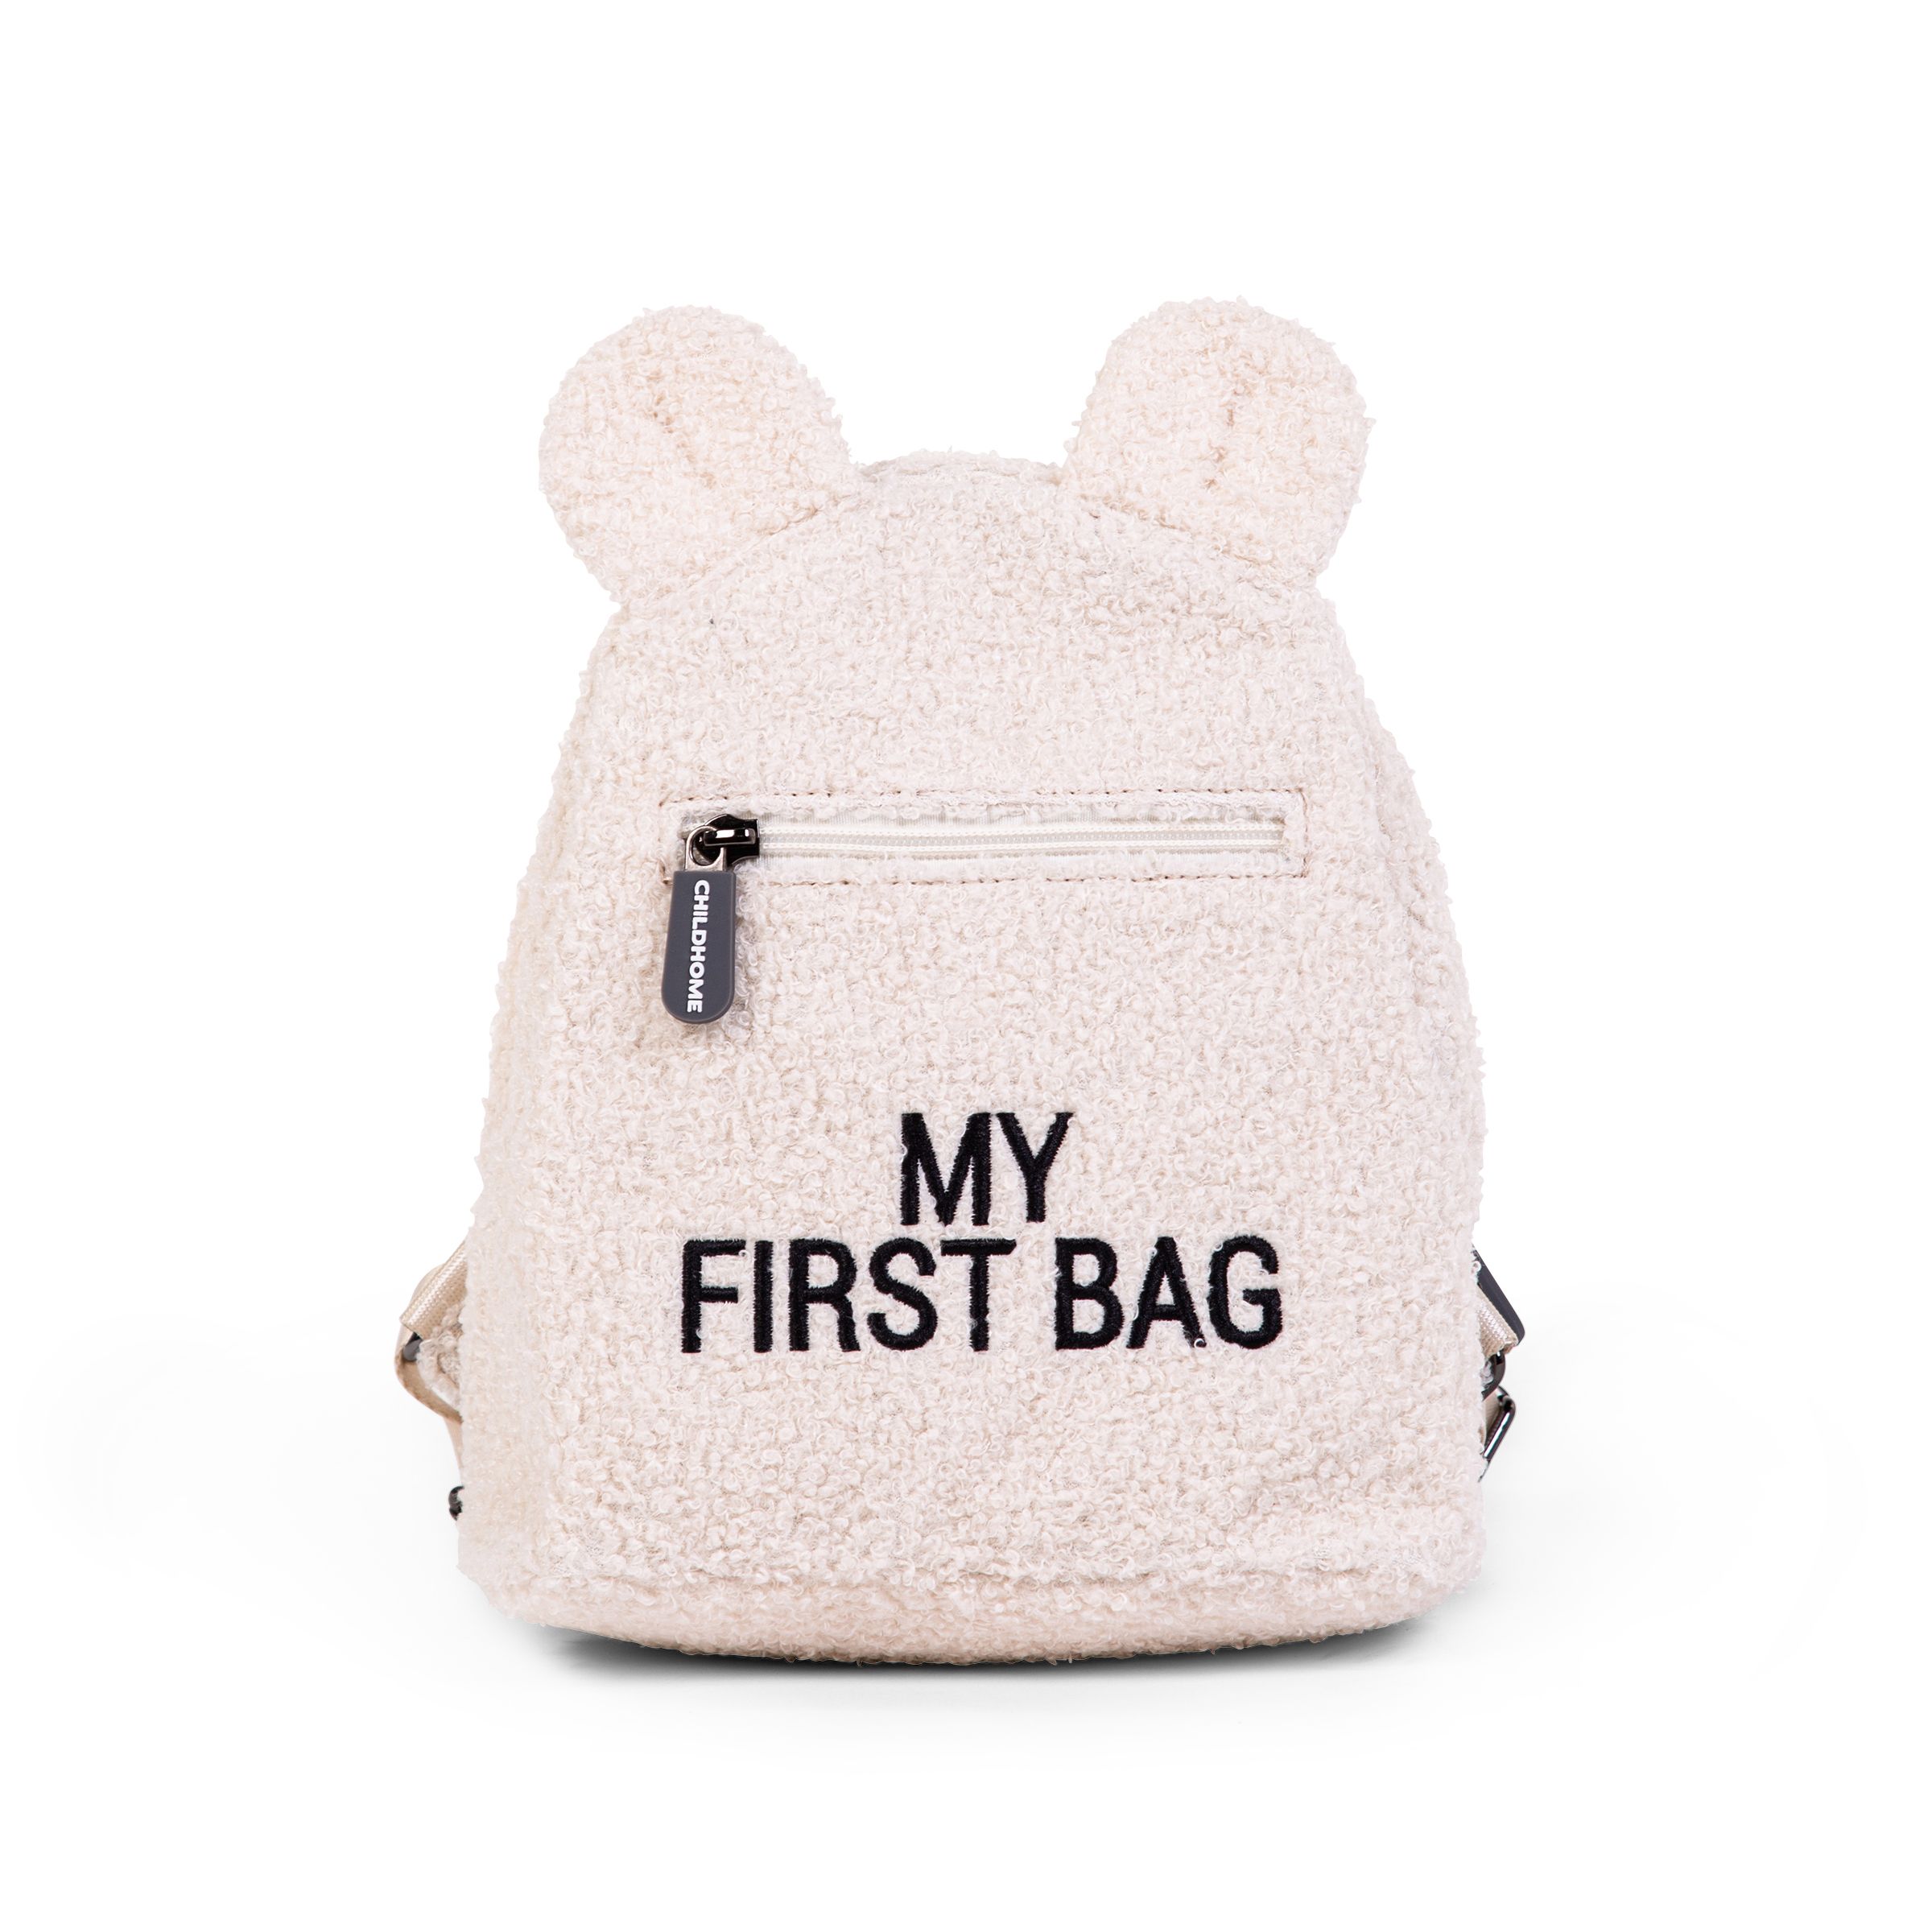 Rucsac pentru copii Childhome My First Bag Teddy Ecru buy4baby.ro imagine noua